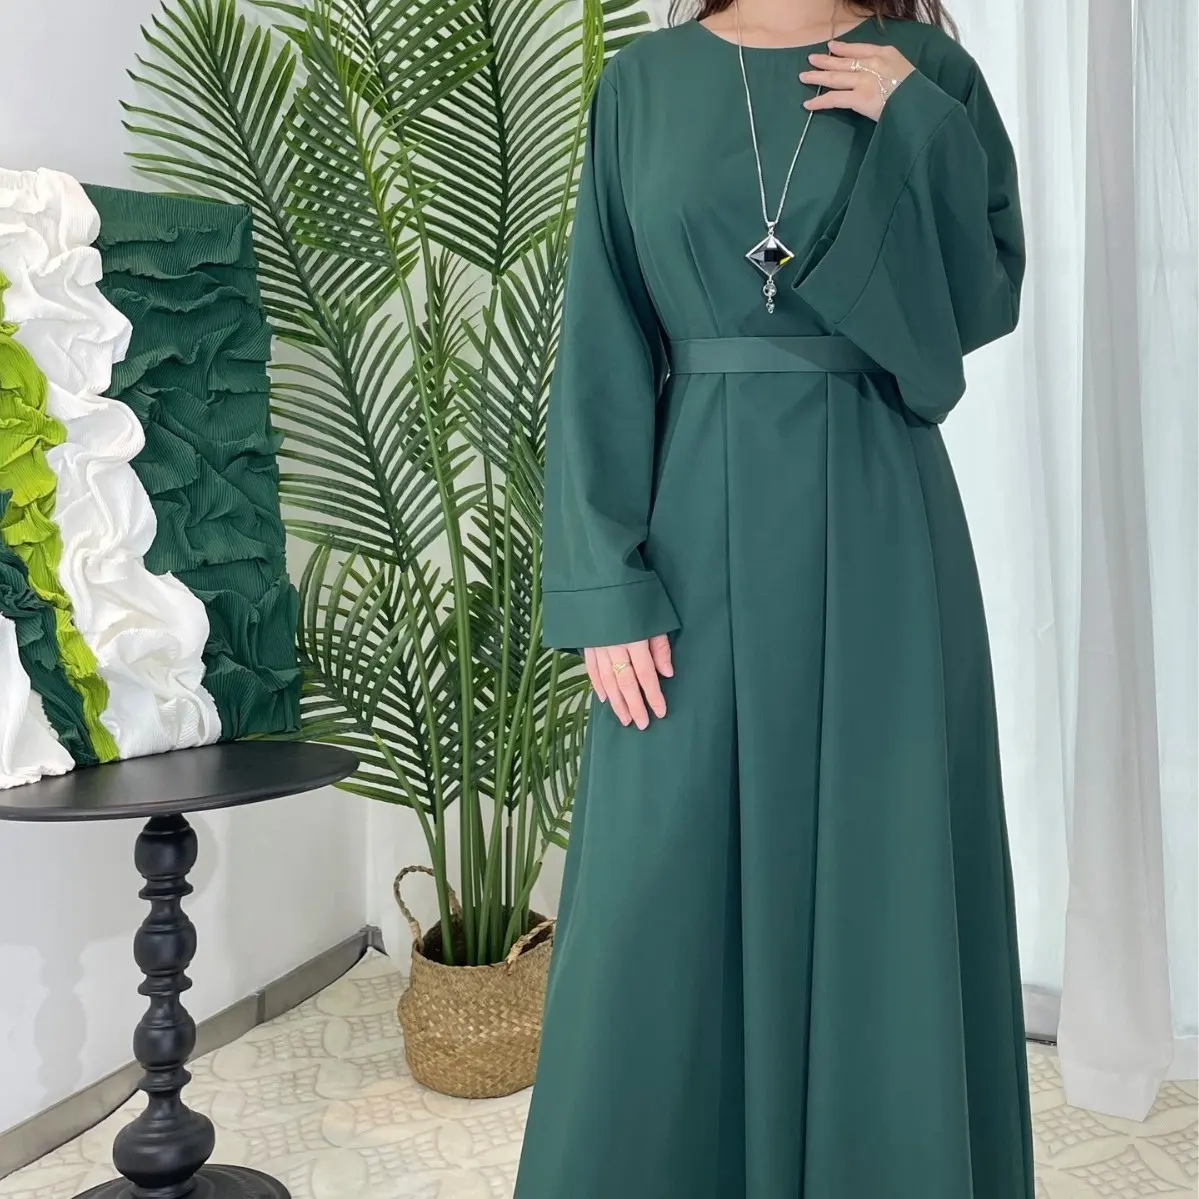 Bicomfort all'ingrosso all'ingrosso di alta qualità Maxi manica lunga in chiffon medio-orientale arabico abbigliamento islamico Robe donna modesto Abaya